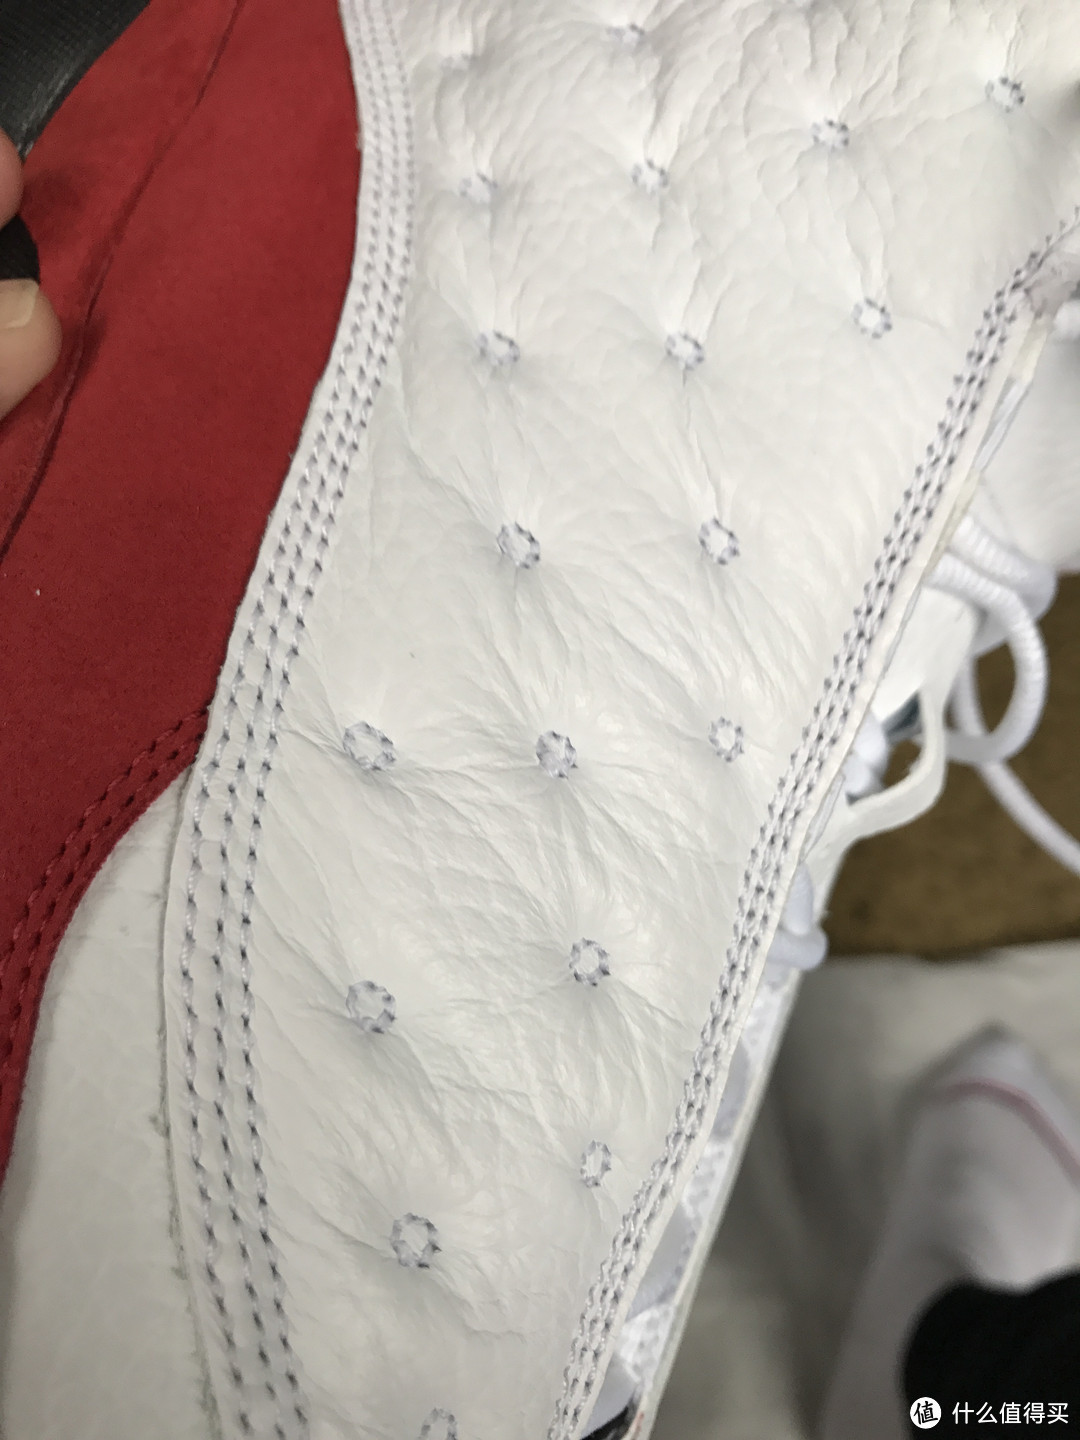 无关风月， 为情怀买单：Air Jordan 13 Retro 白红 篮球鞋